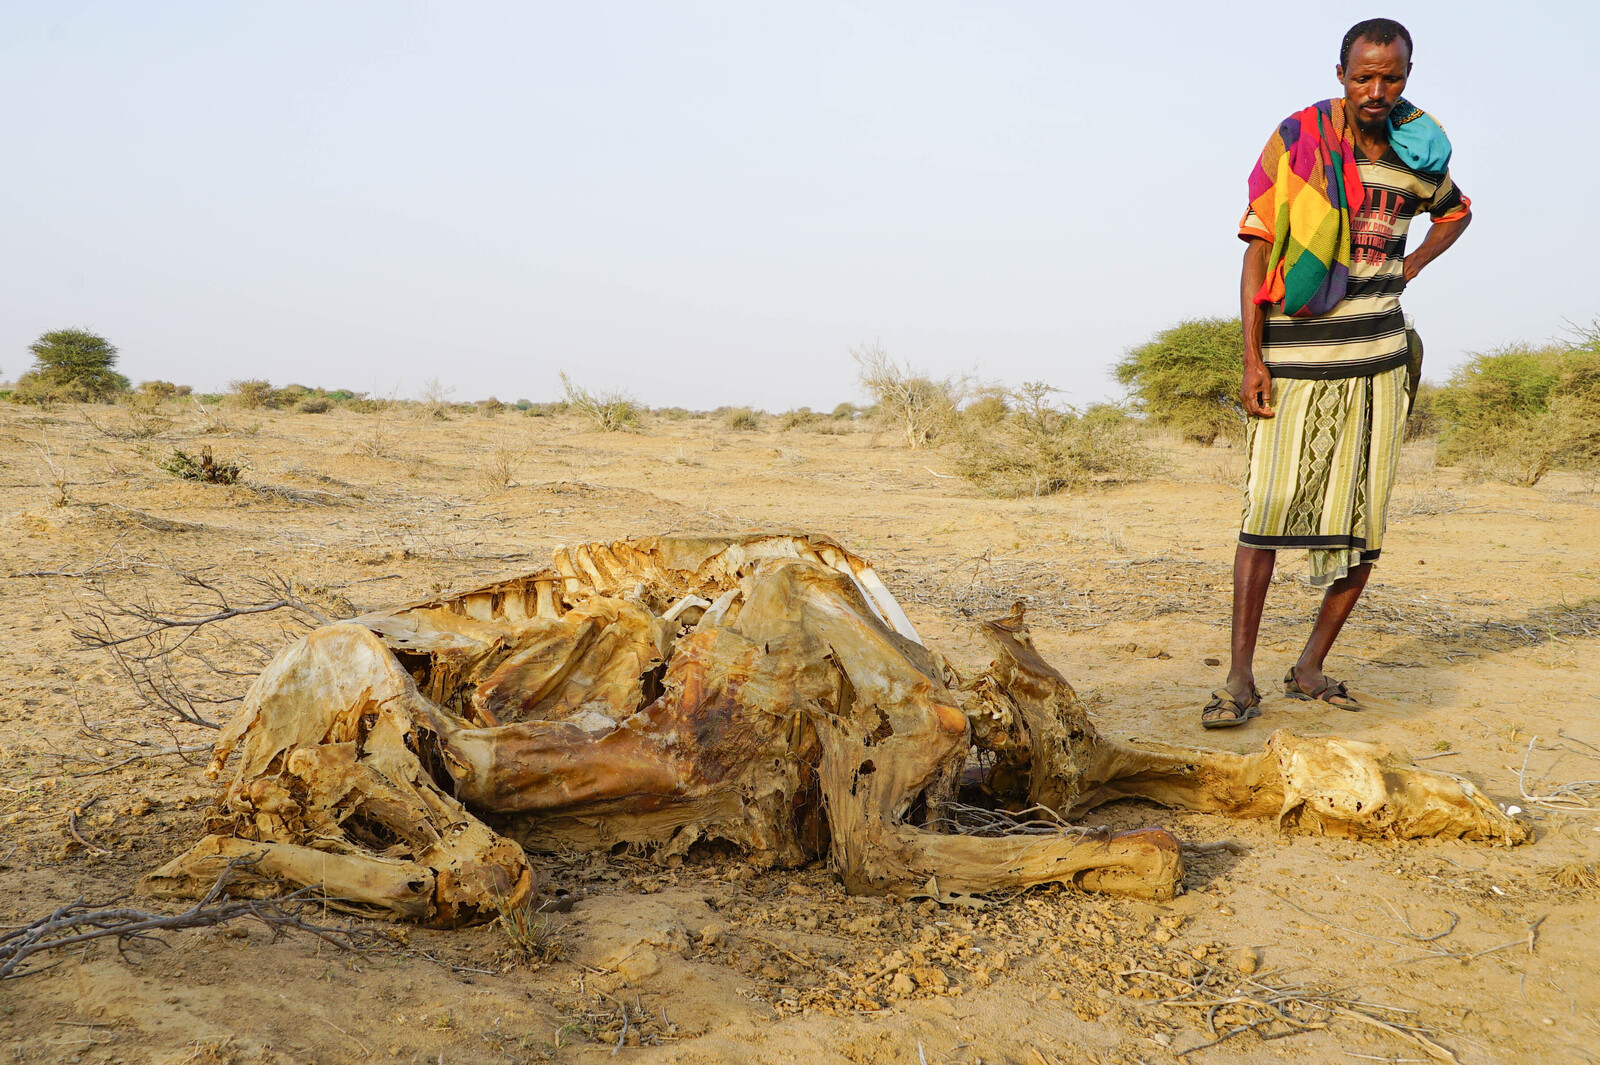 Ein Mann steht neben einem toten Kamel in Somalia. Während der Trockenheit leiden Mensch und Vieh.